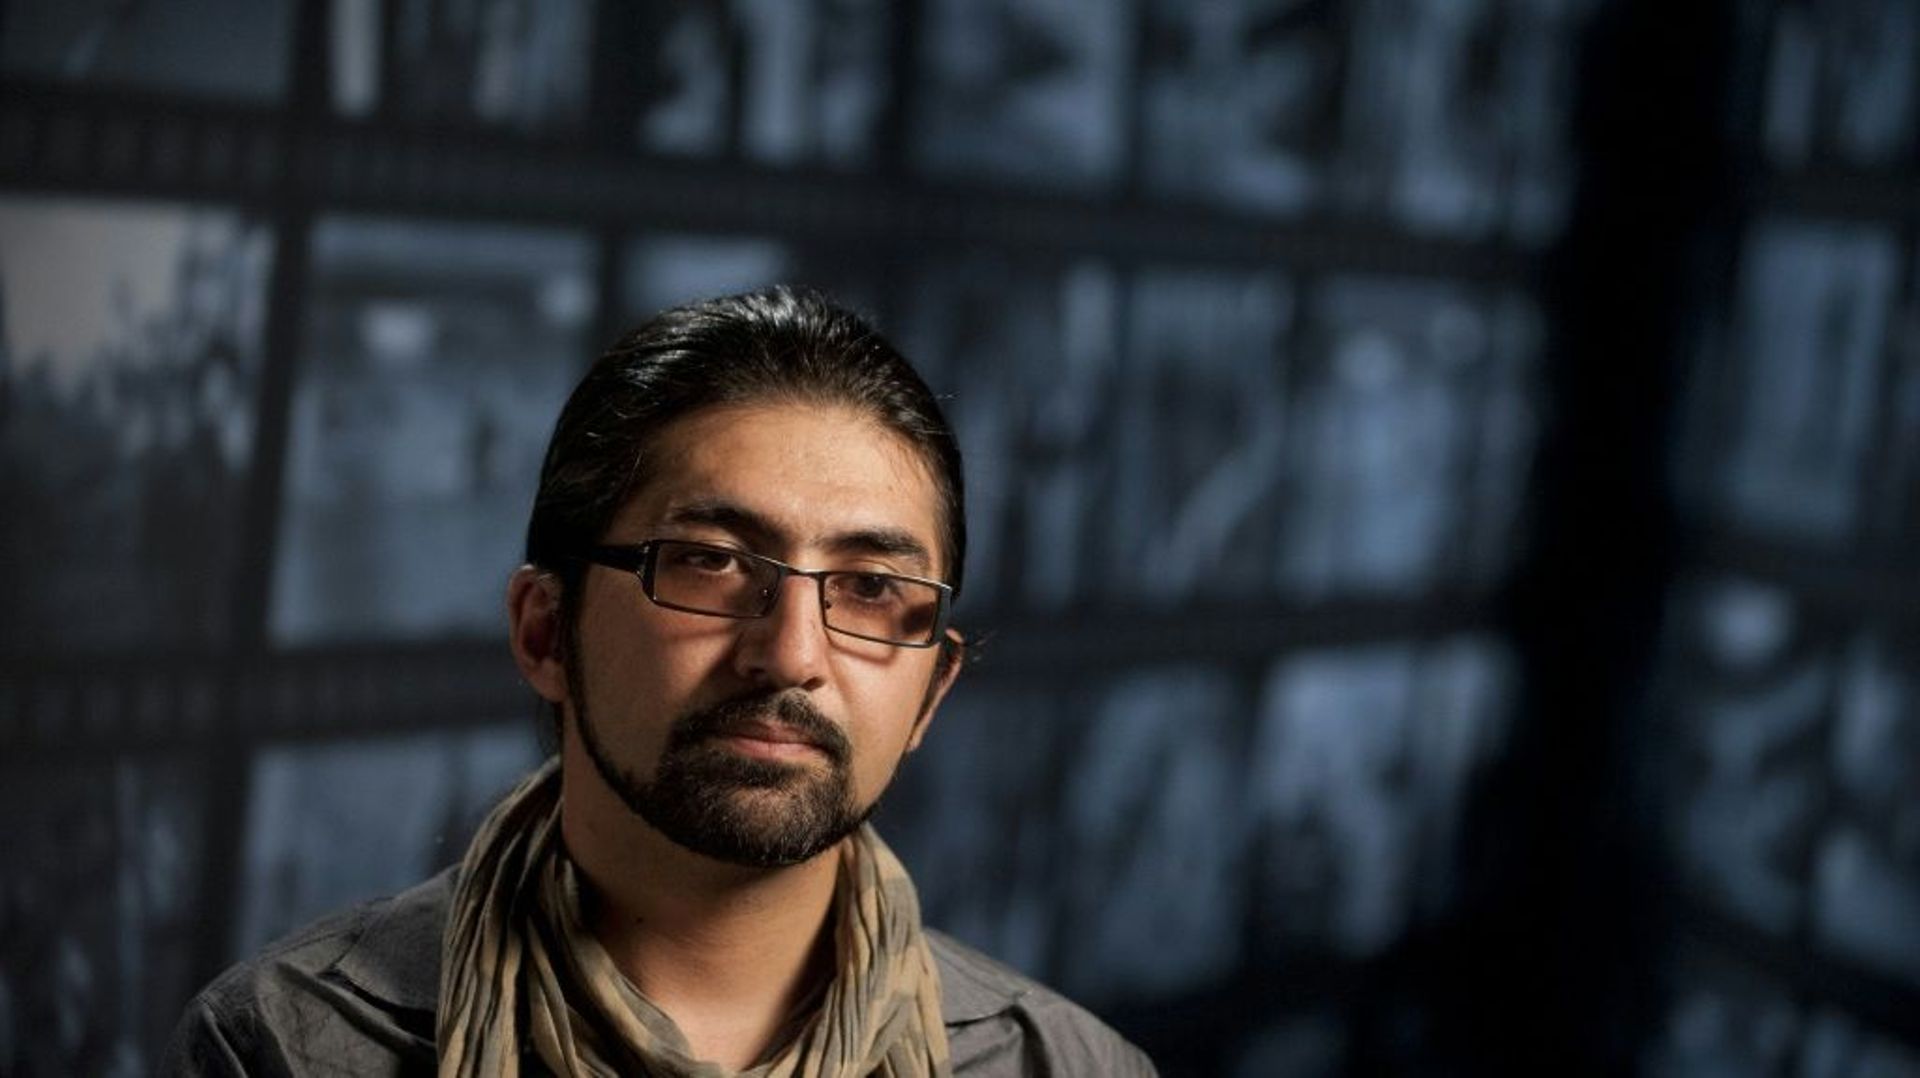 Le photographe Massoud Hossaini discute de la photo qui lui a valu le prix Pulitzer, au Newseum à Washington (Etats-Unis), le 24 mai 2012